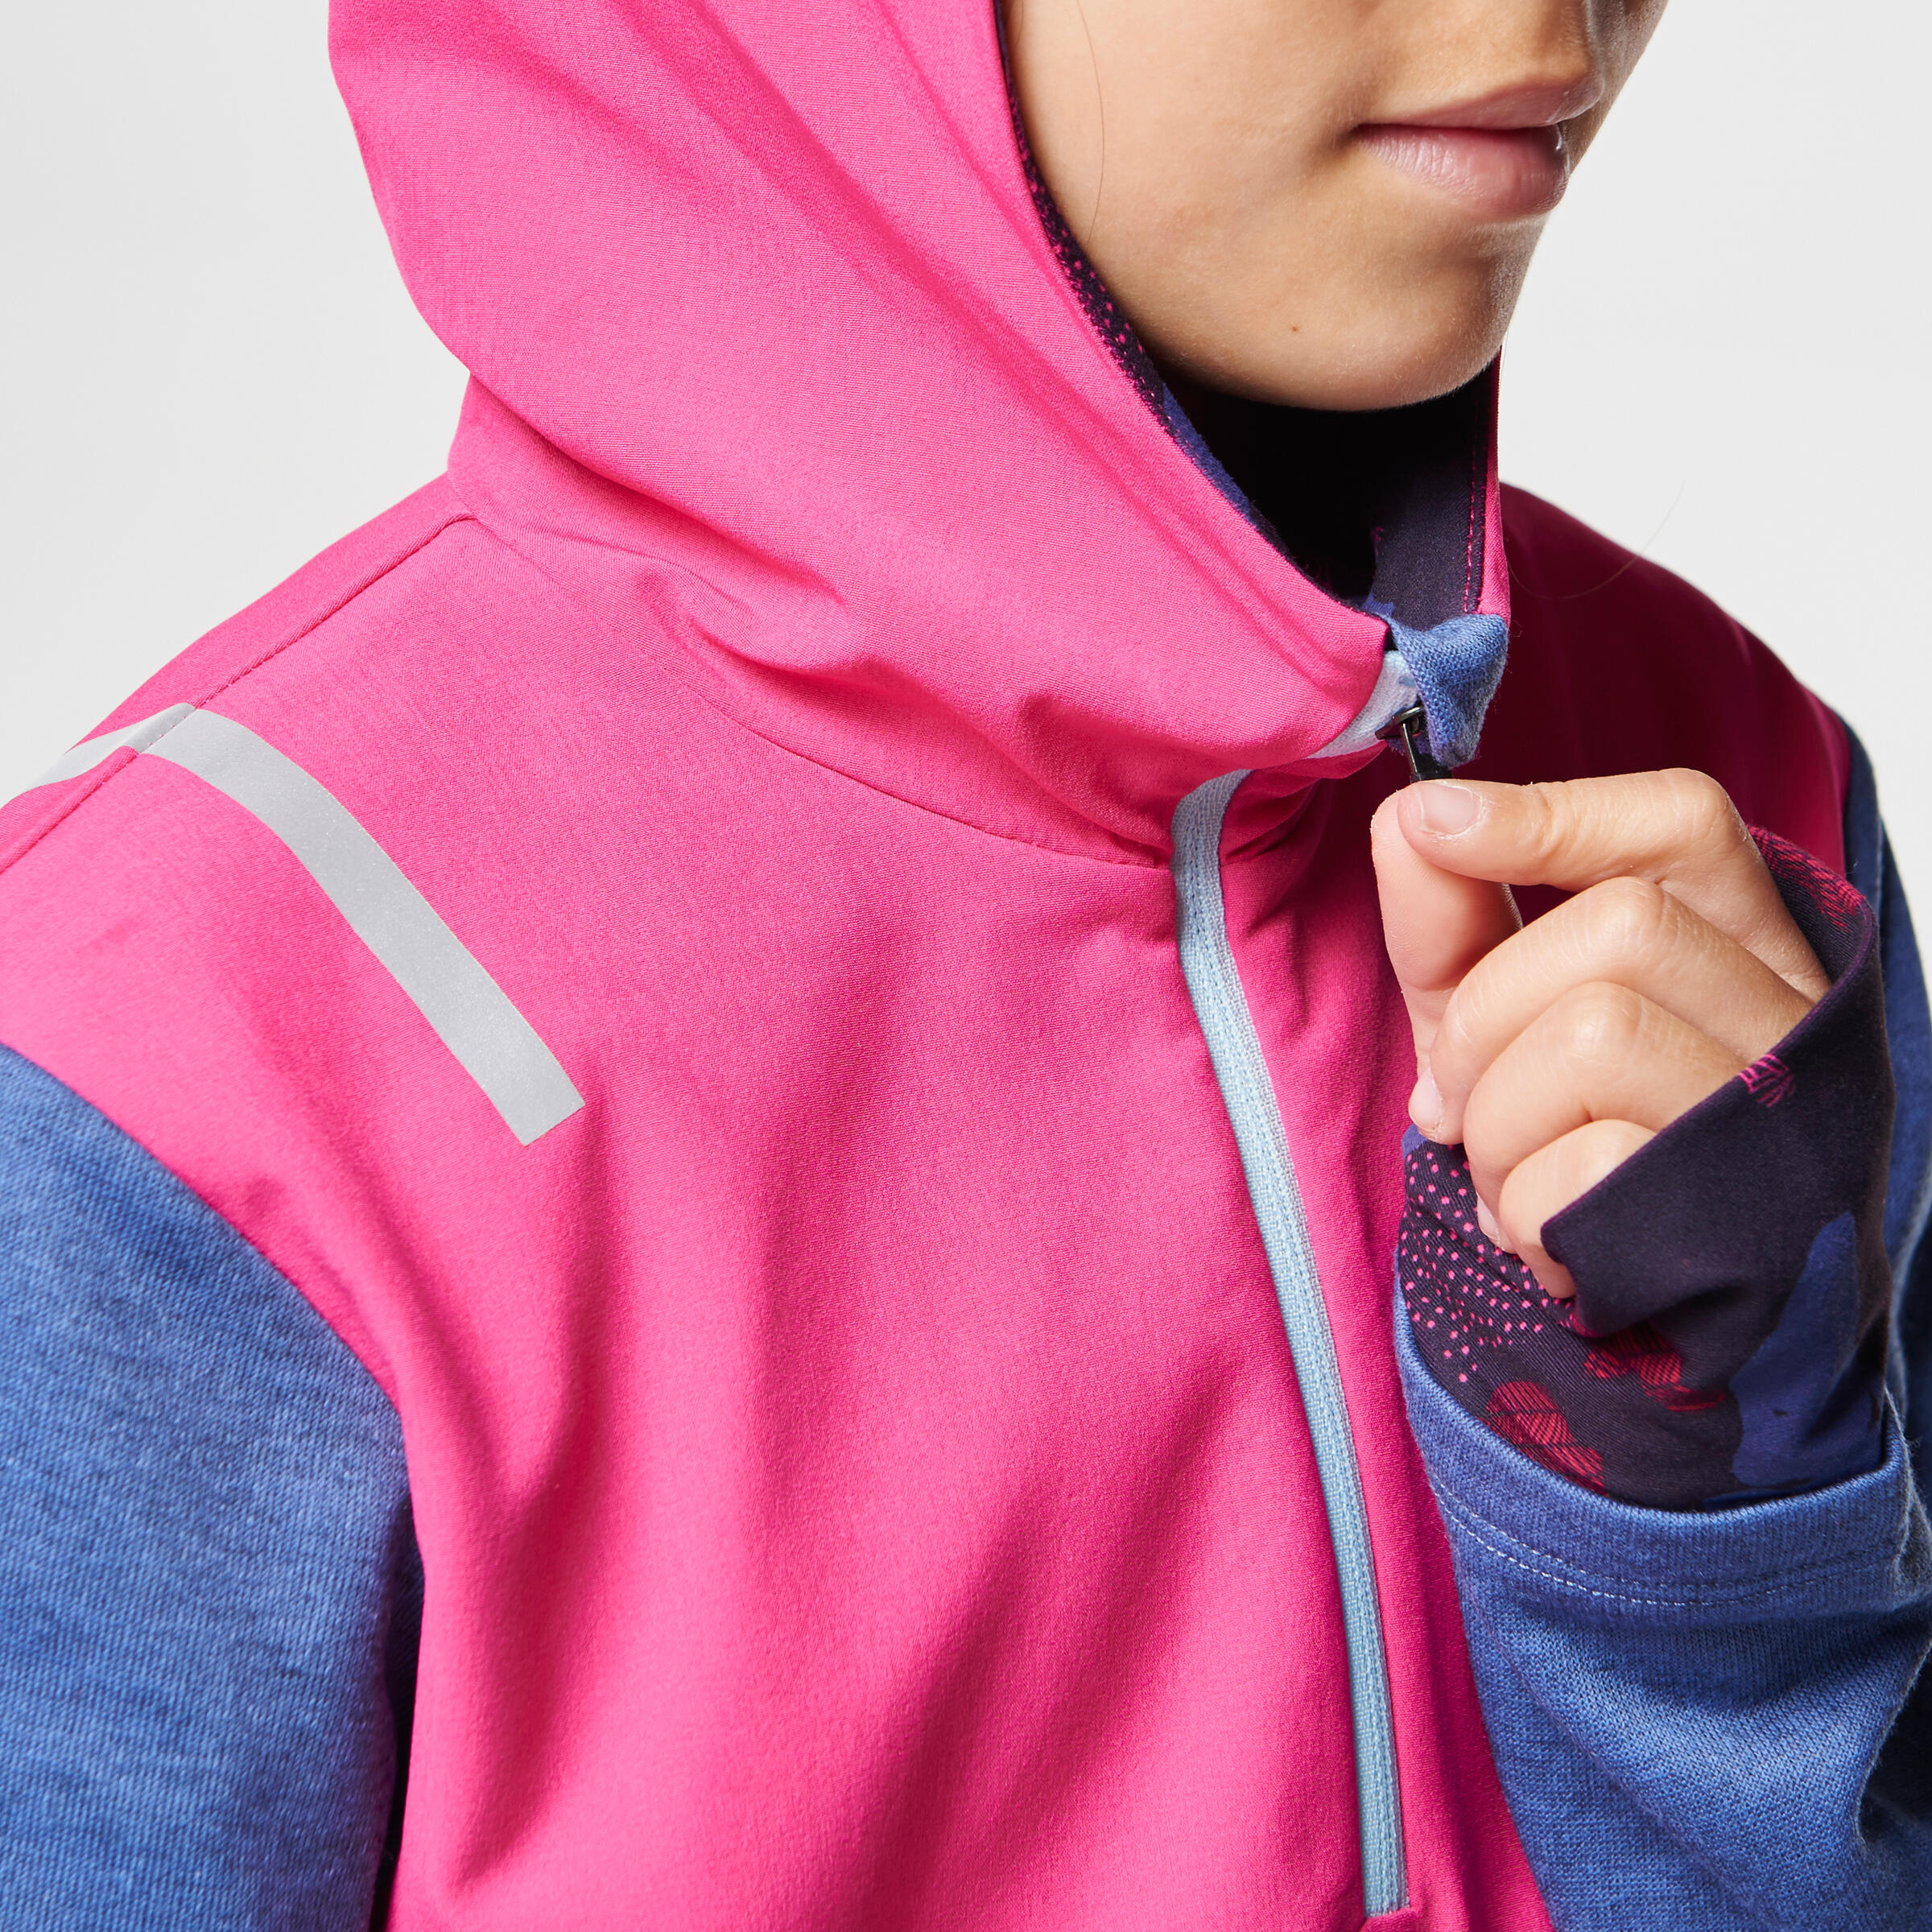 Elio Children's Running Hooded Jersey - Pink/Blue
 7/16